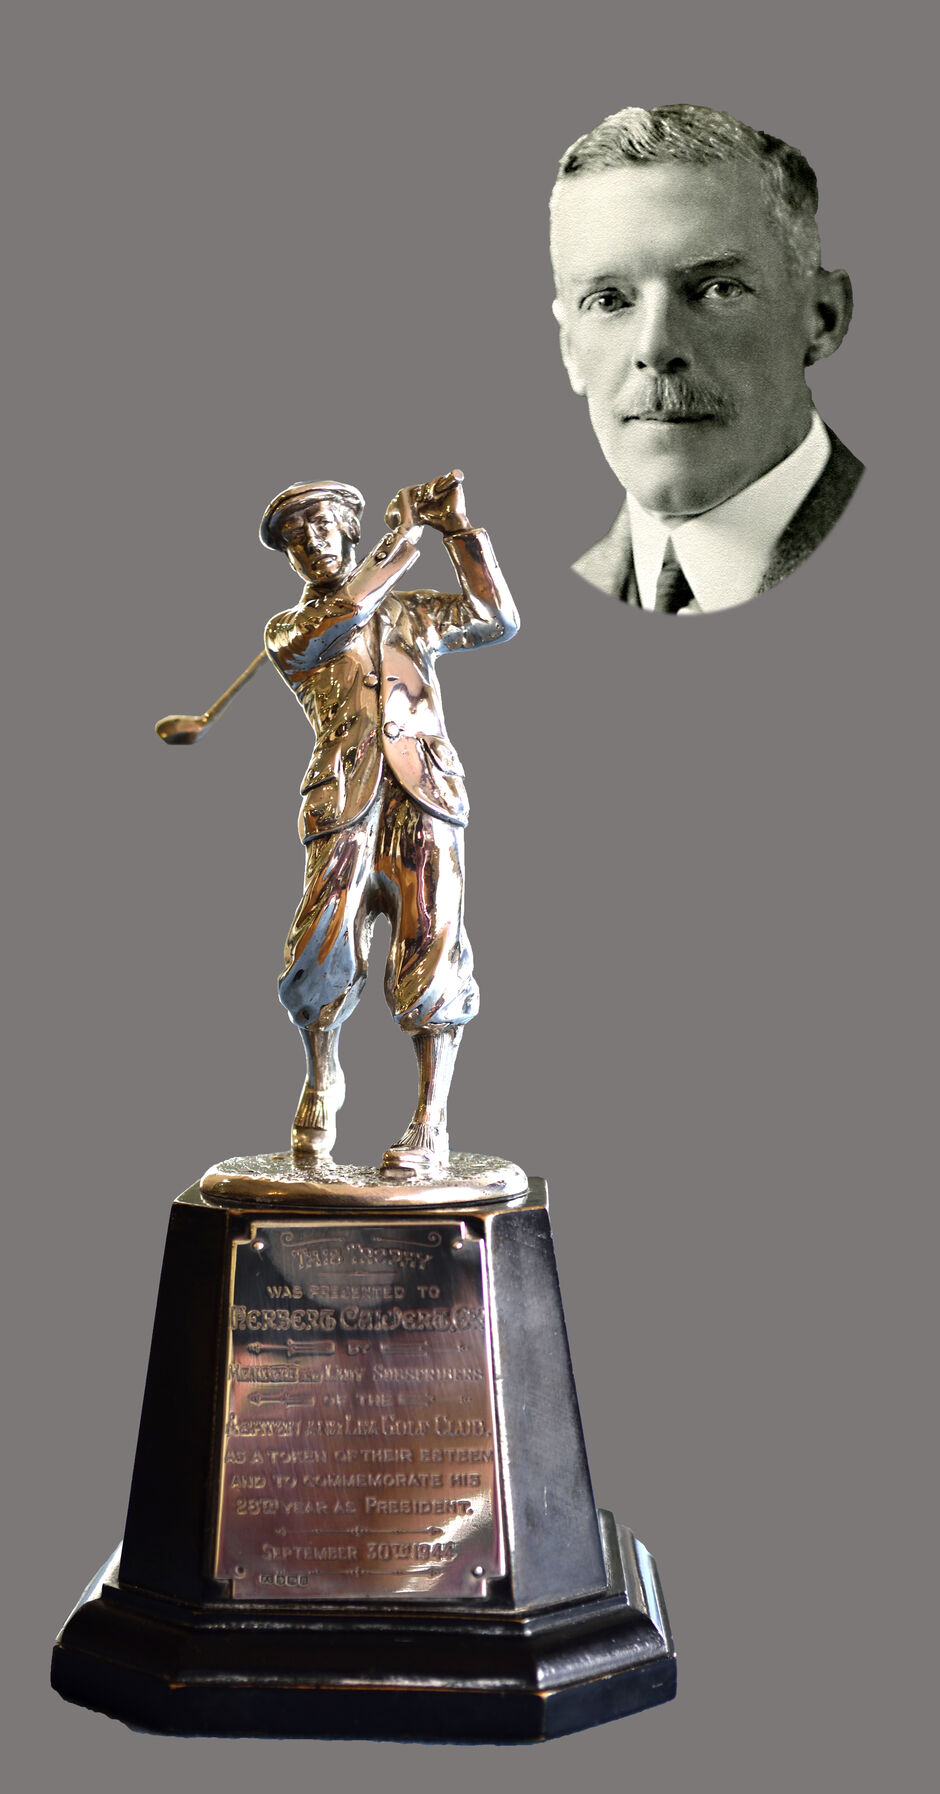 The Calvert Trophy